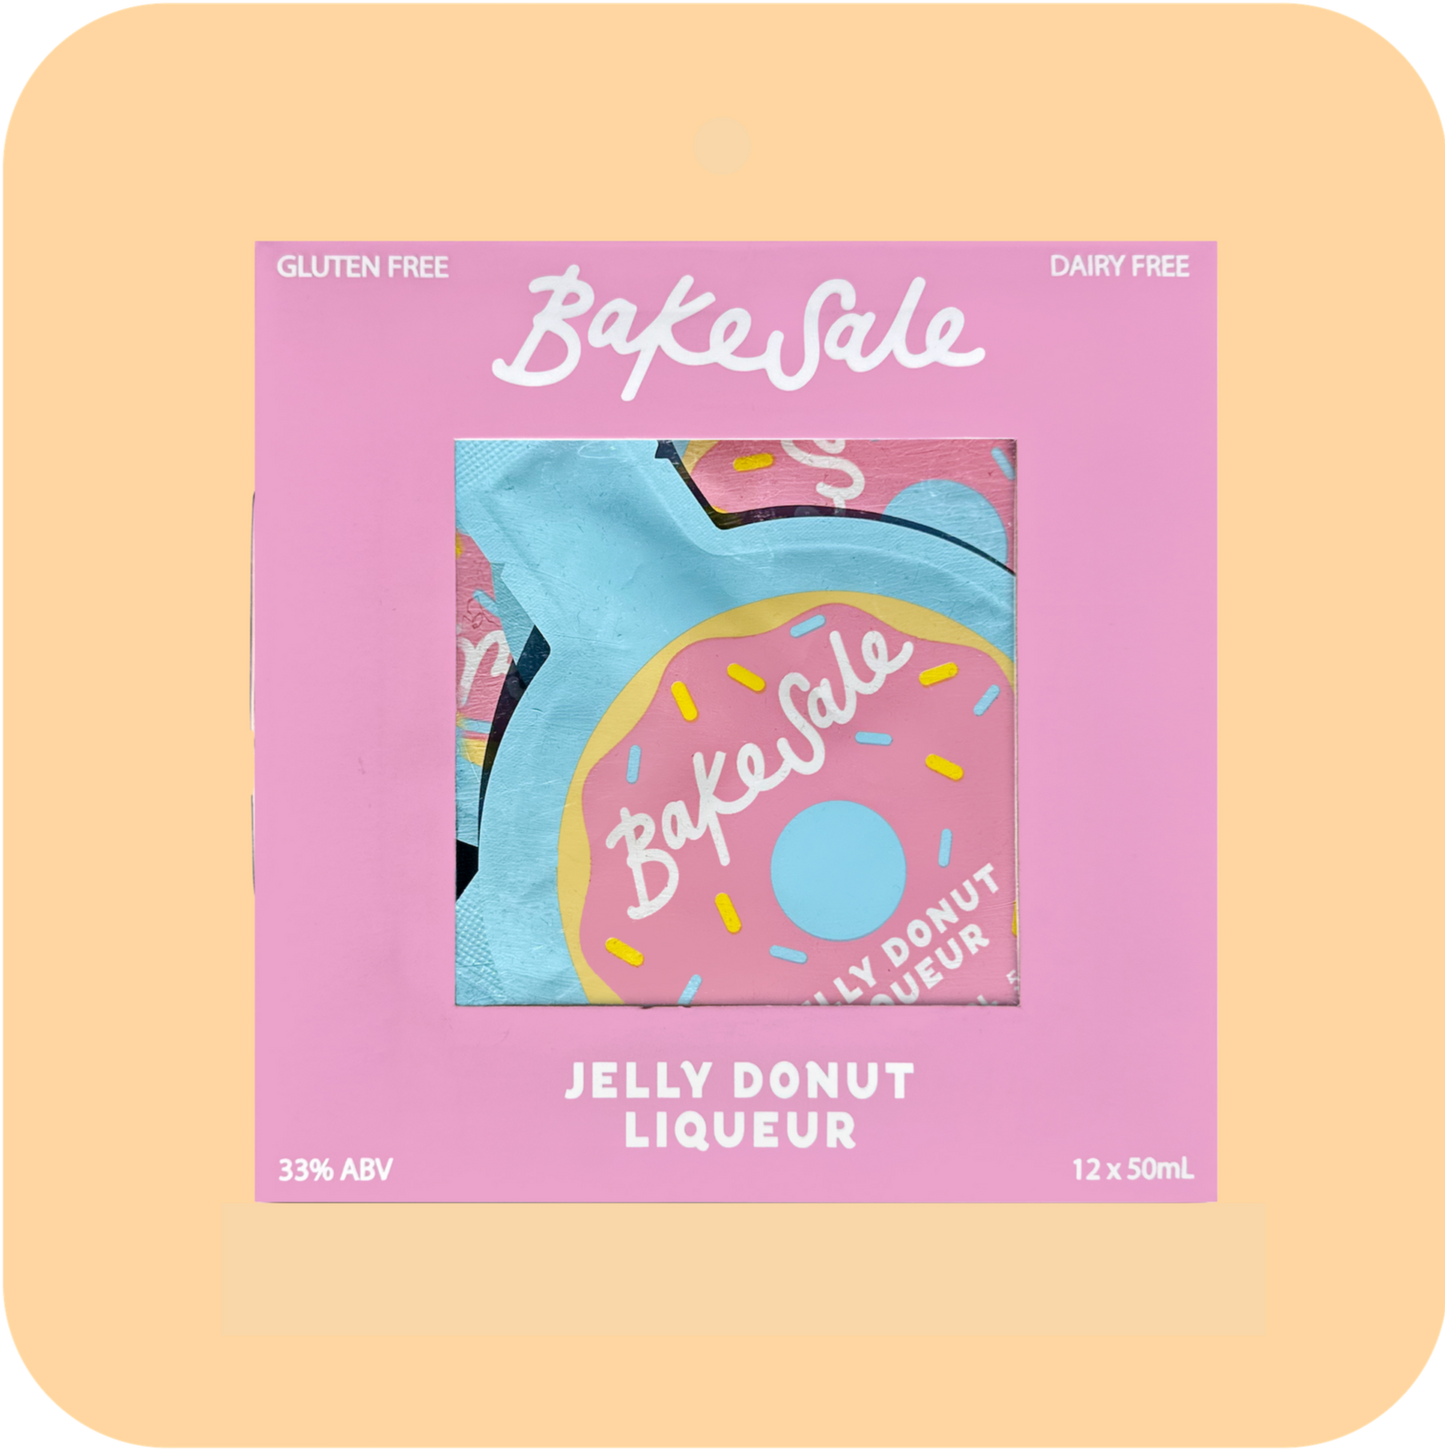 Jelly Donut